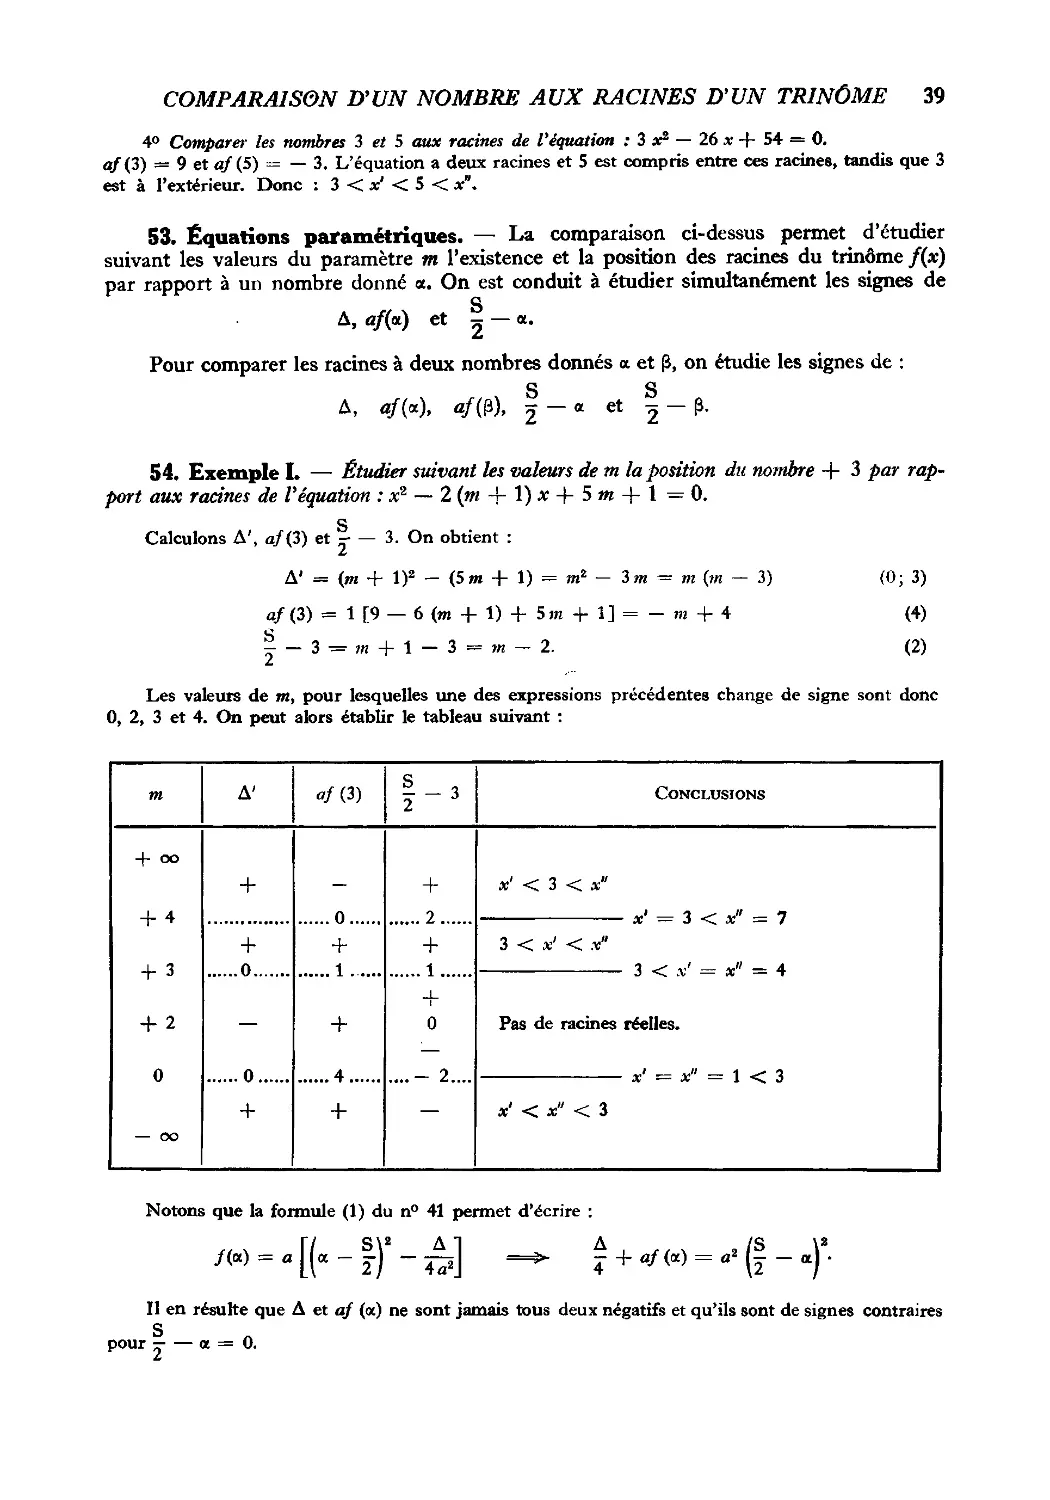 53. Équations paramétriques
54. Exemple I